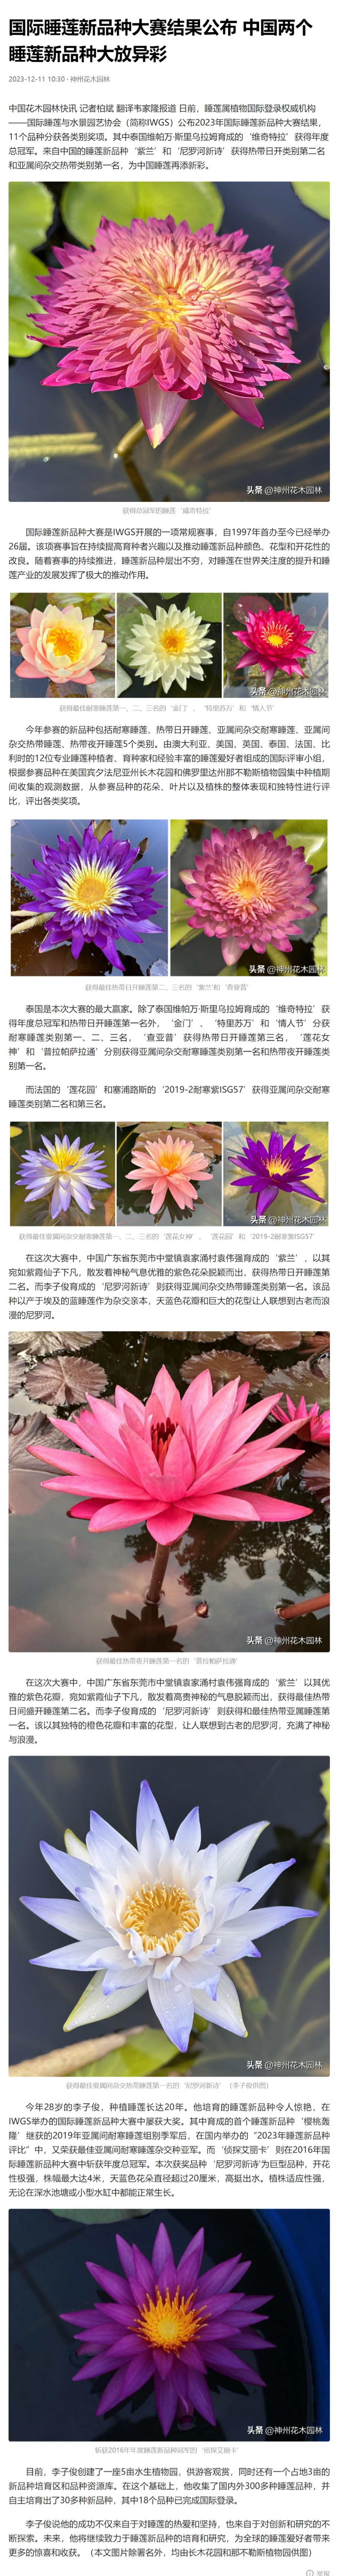 国际睡莲新品种大赛结果公布 中国两个睡莲新品种大放异彩